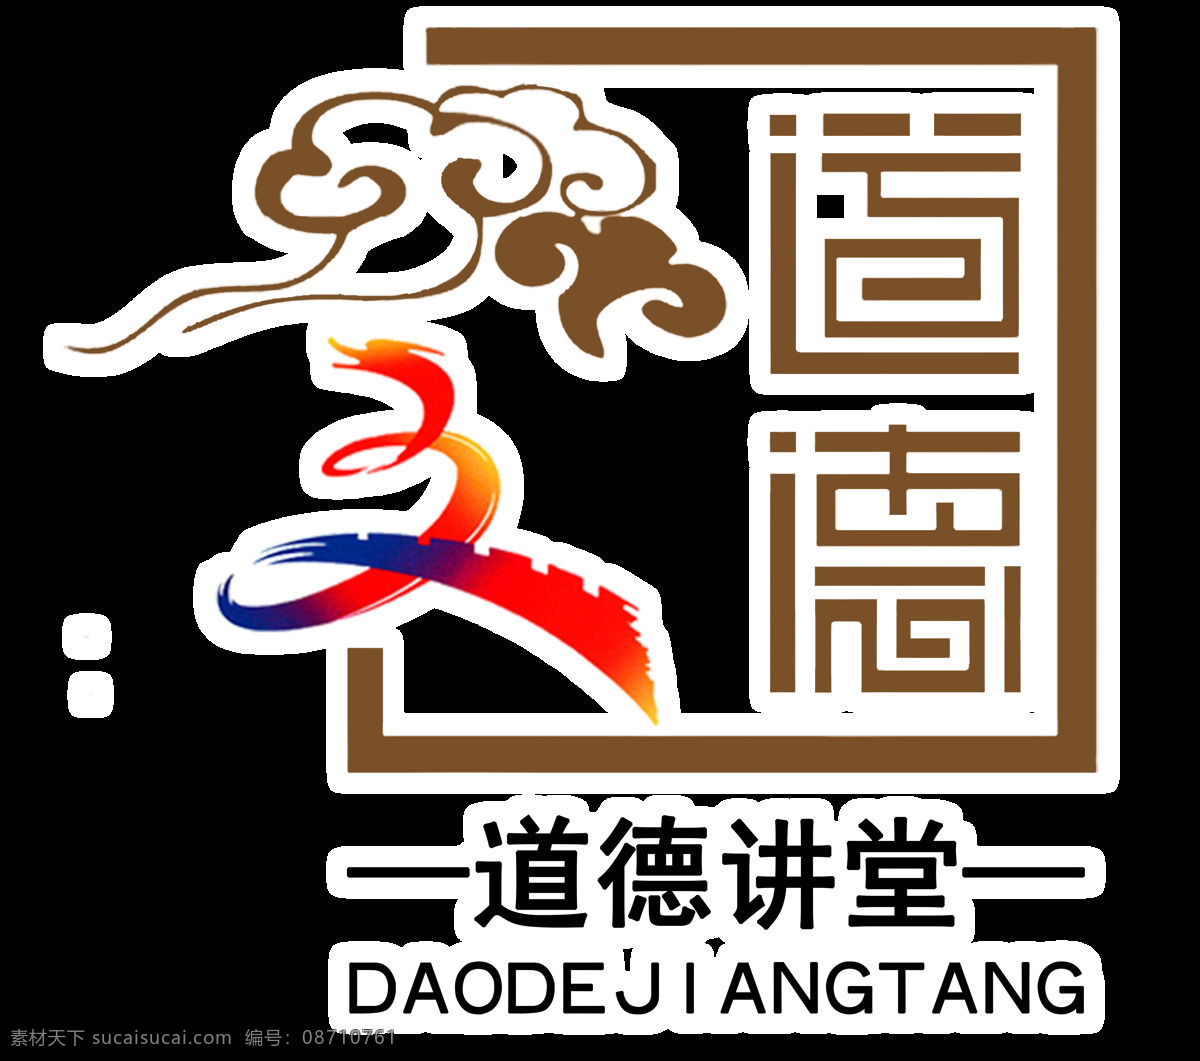 渭城区 创 文 标志 logo psd源文件 logo设计